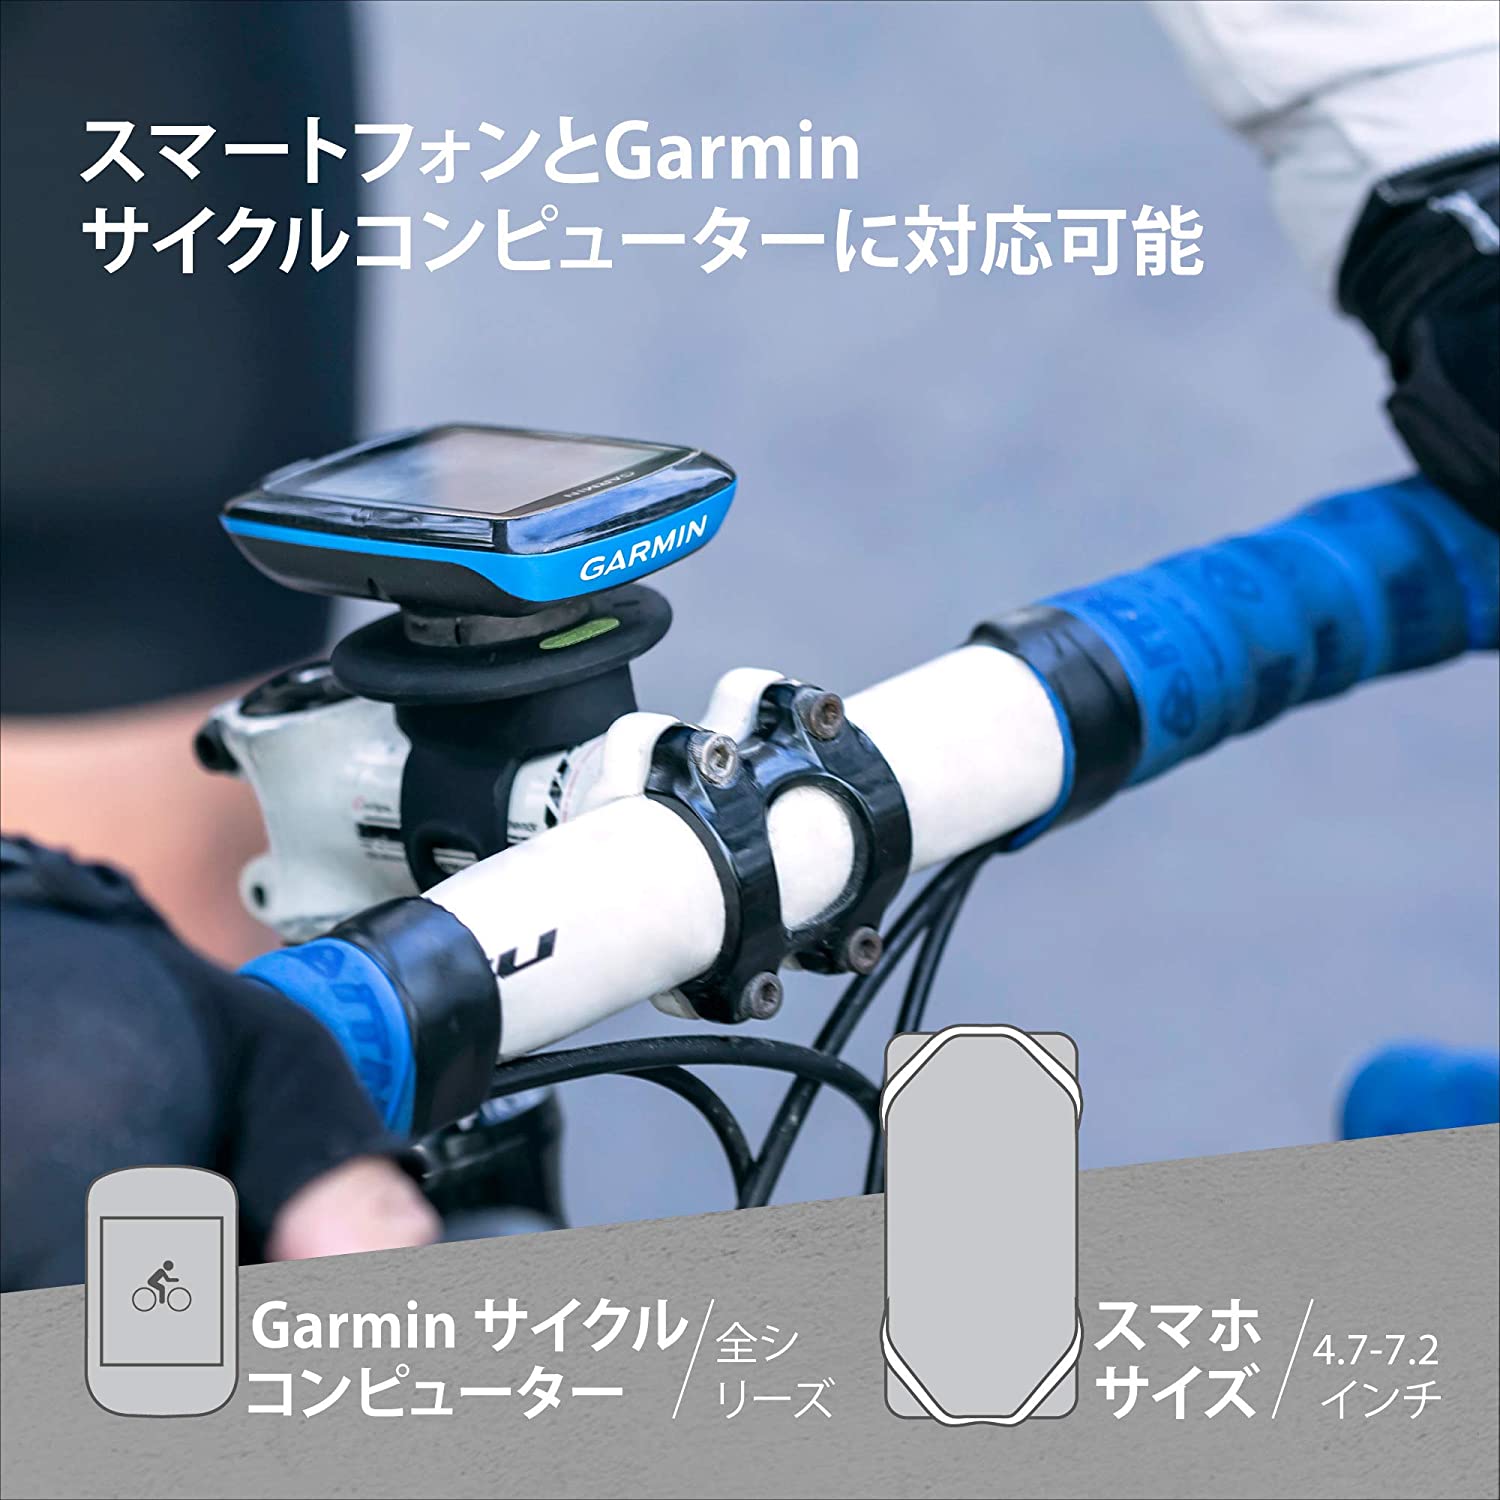 サイクリング用 自転車 ロードバイク スマートフォンホルダー ガーミン接続規格採用 Garmmin タッチ操作 指紋認証 簡単着脱 調節可能  4.7〜7.2インチスマホに対応 iPhone12 ポタリング BONEcollection エアリアダイレクト